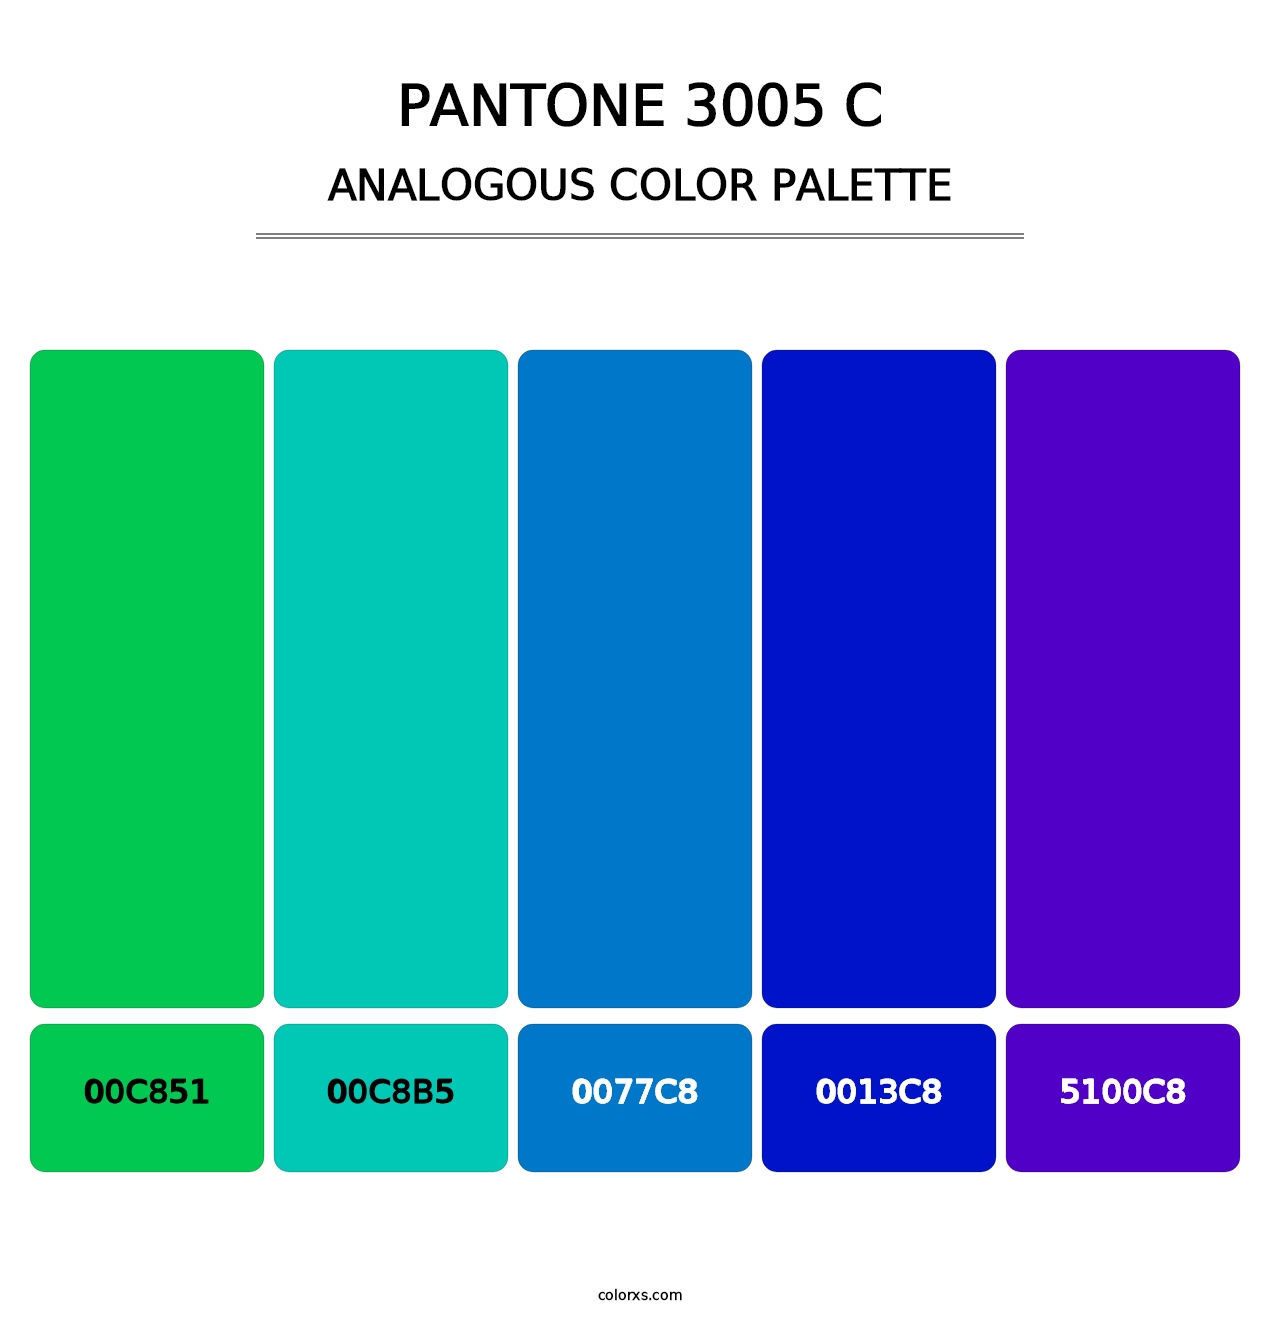 PANTONE 3005 C - Analogous Color Palette